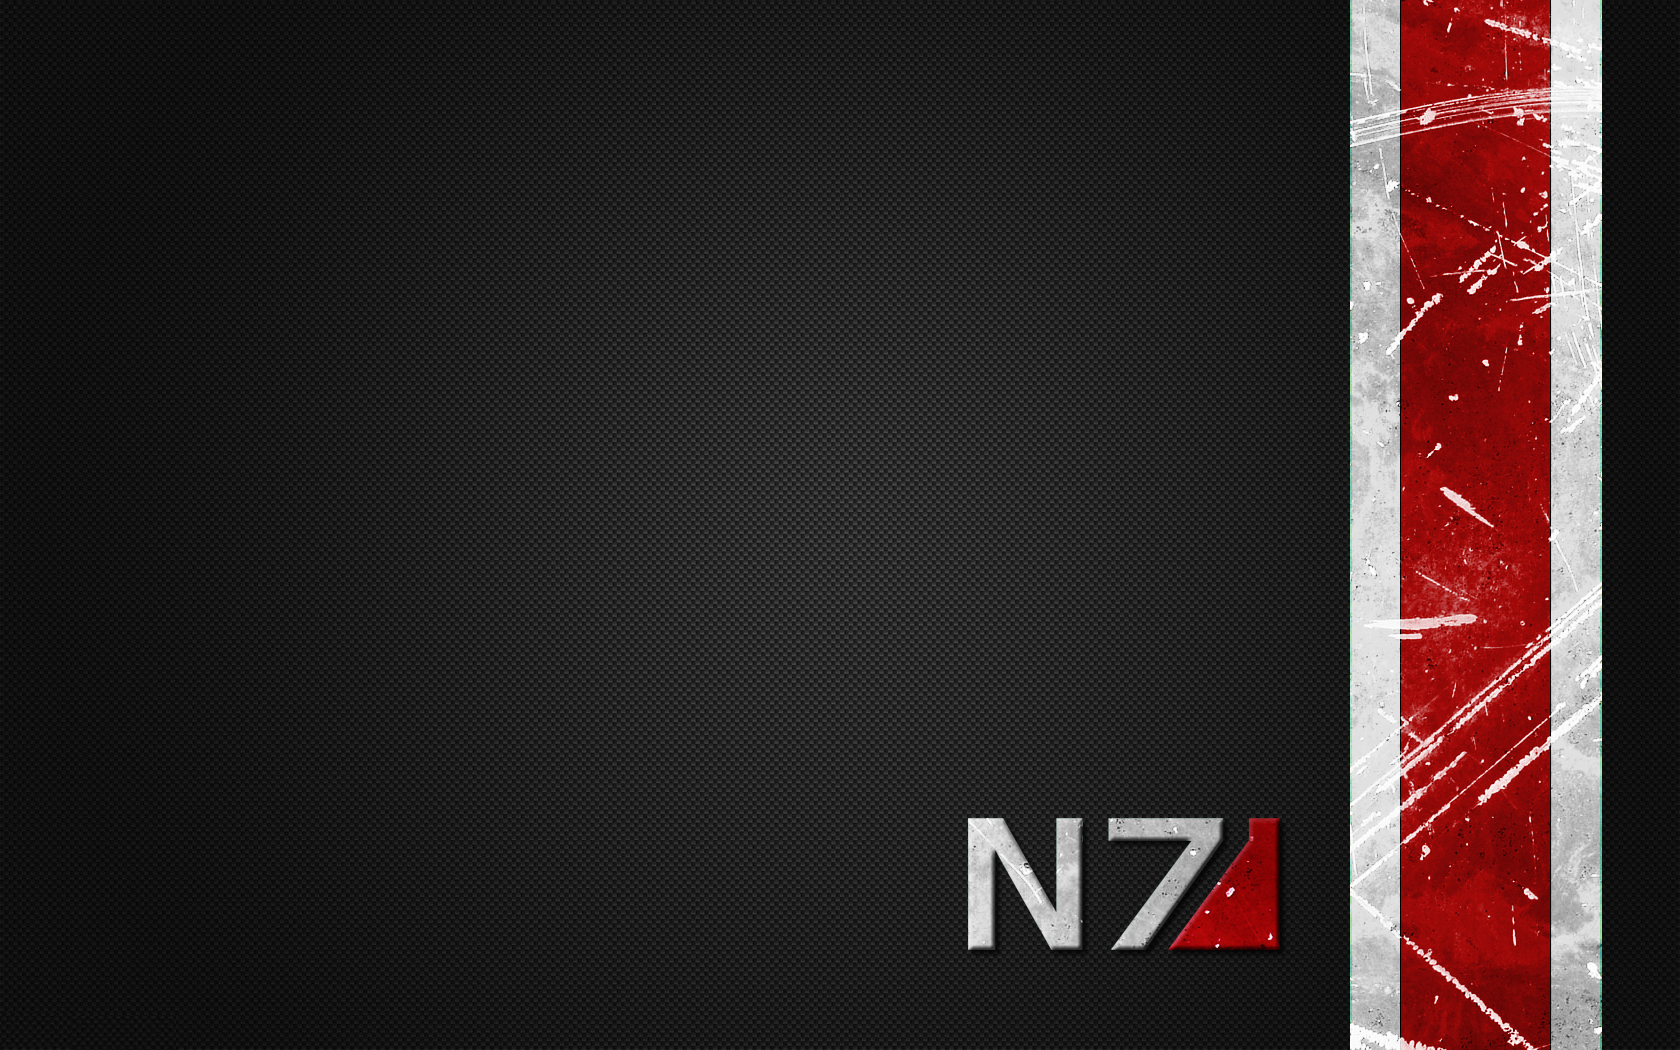 Mass Effect Puter Wallpaper Desktop Background Id